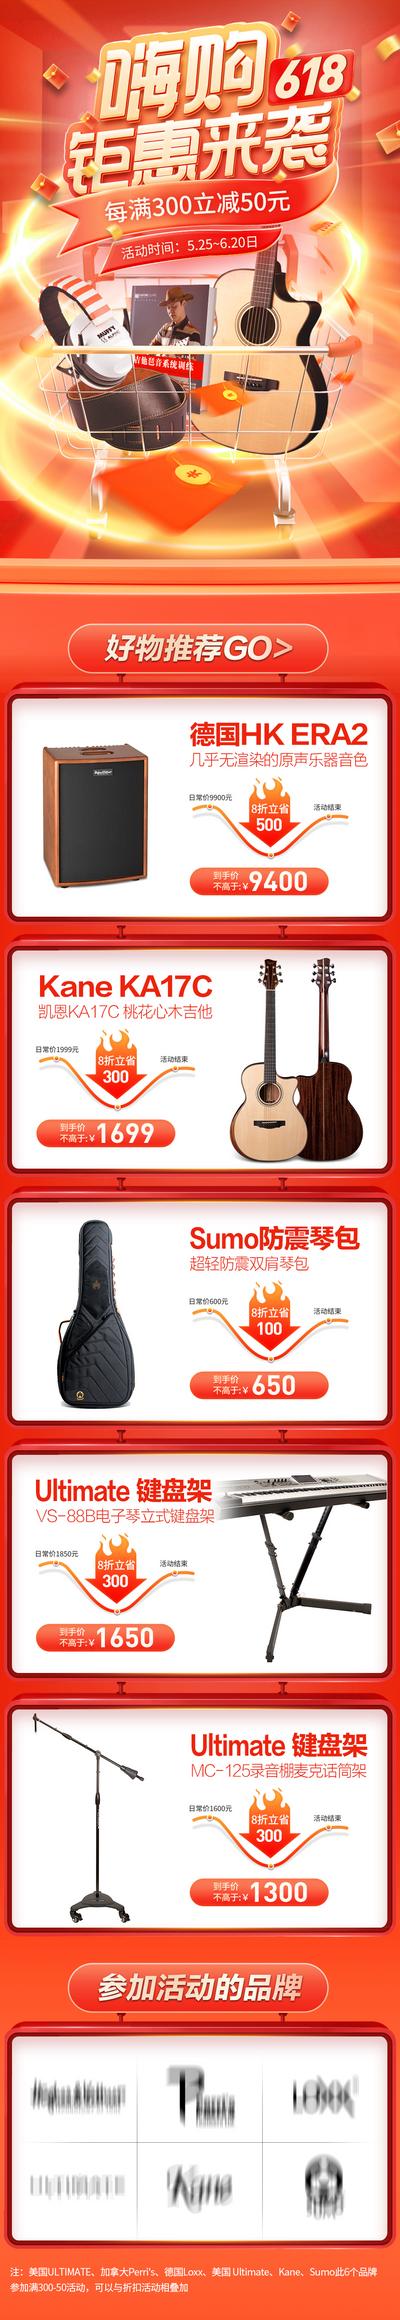 南门网 广告 海报 电商 大促 618 京东 专题 双11 双12 乐器 音乐